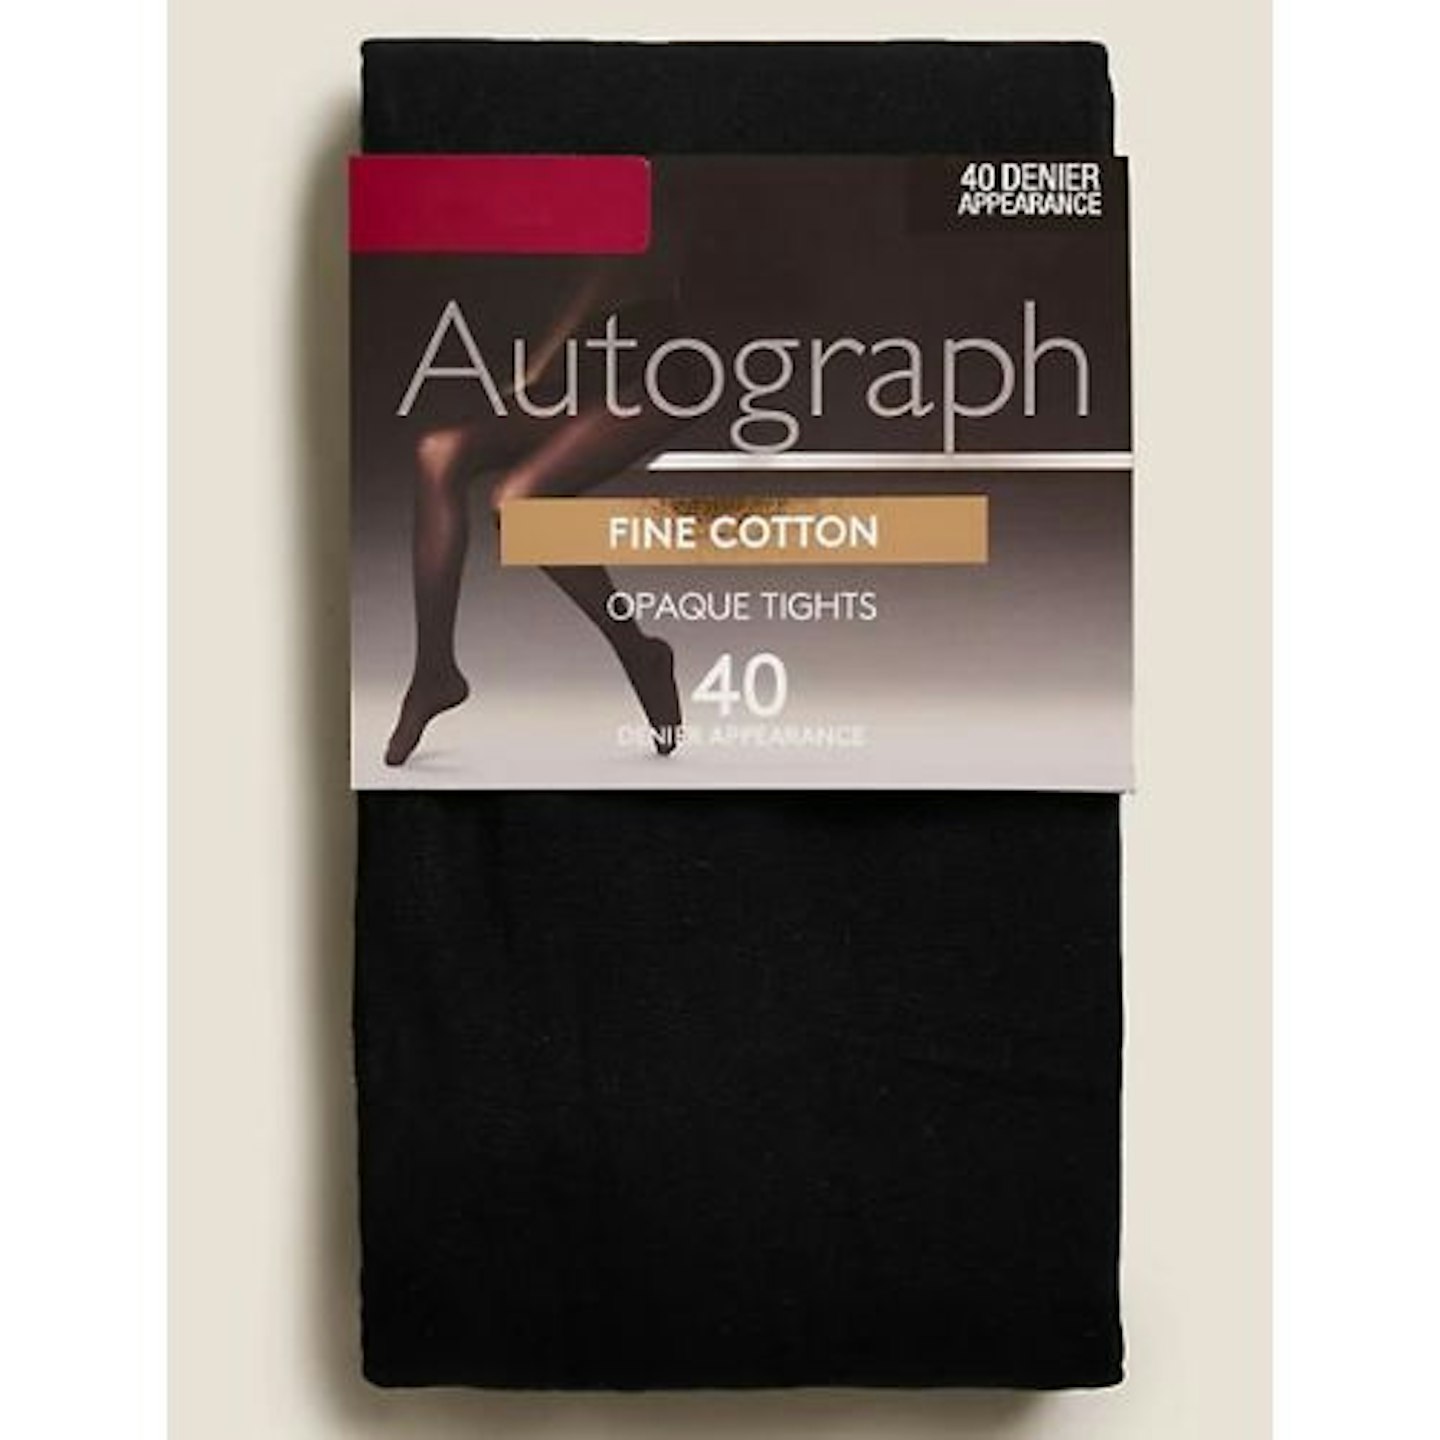 AUTOGRAPH 40 Denier Fine Cotton Opaque Tights